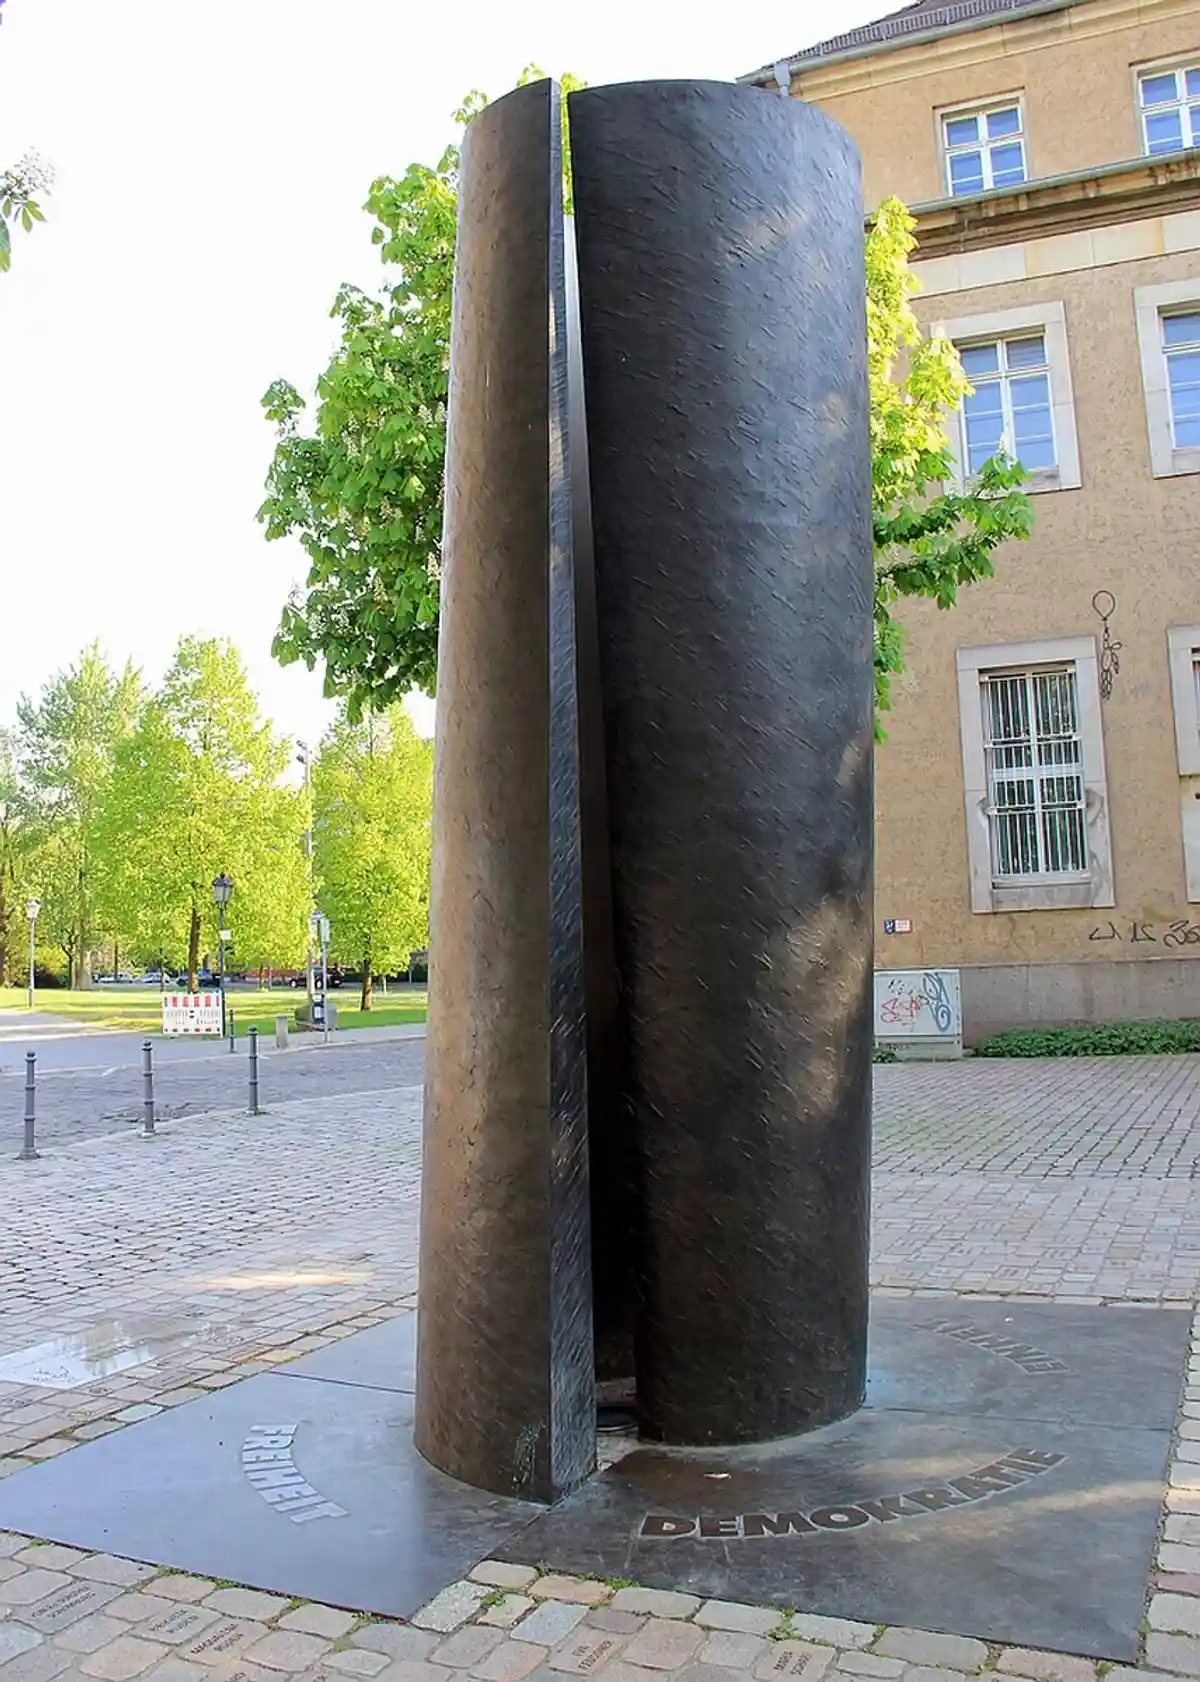 Памятник свободы и демократии, расположенный на Domplatz на улице Lothar-Kreyssig, Магдебург ARK NEYMAN / shutterstock.com